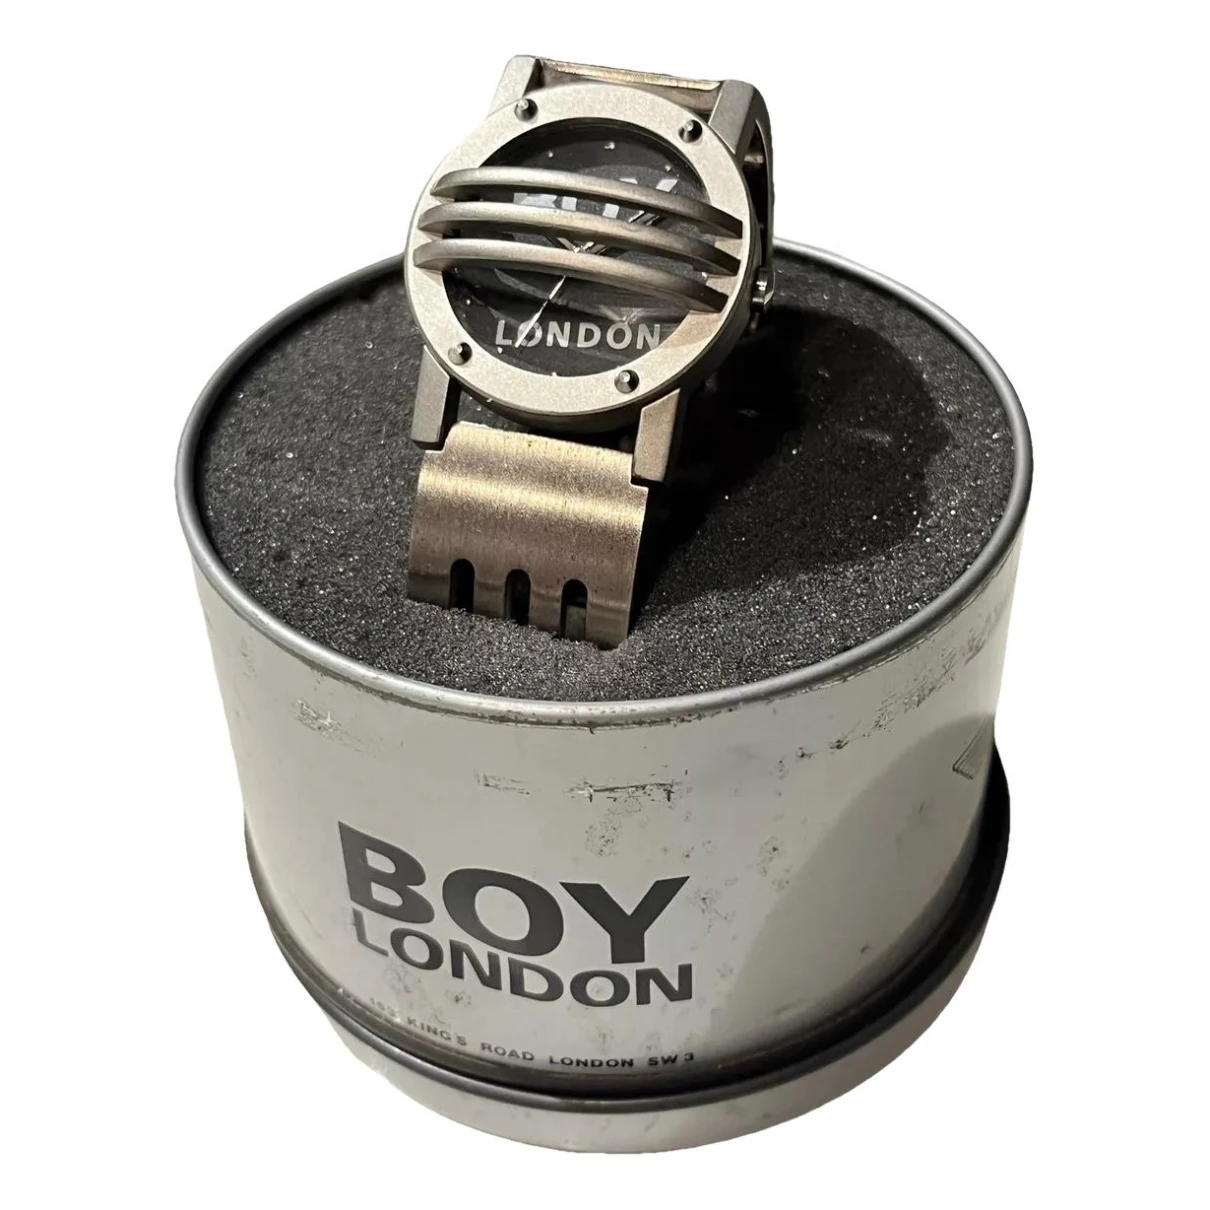 Pre-owned Boy London Watch In Silver